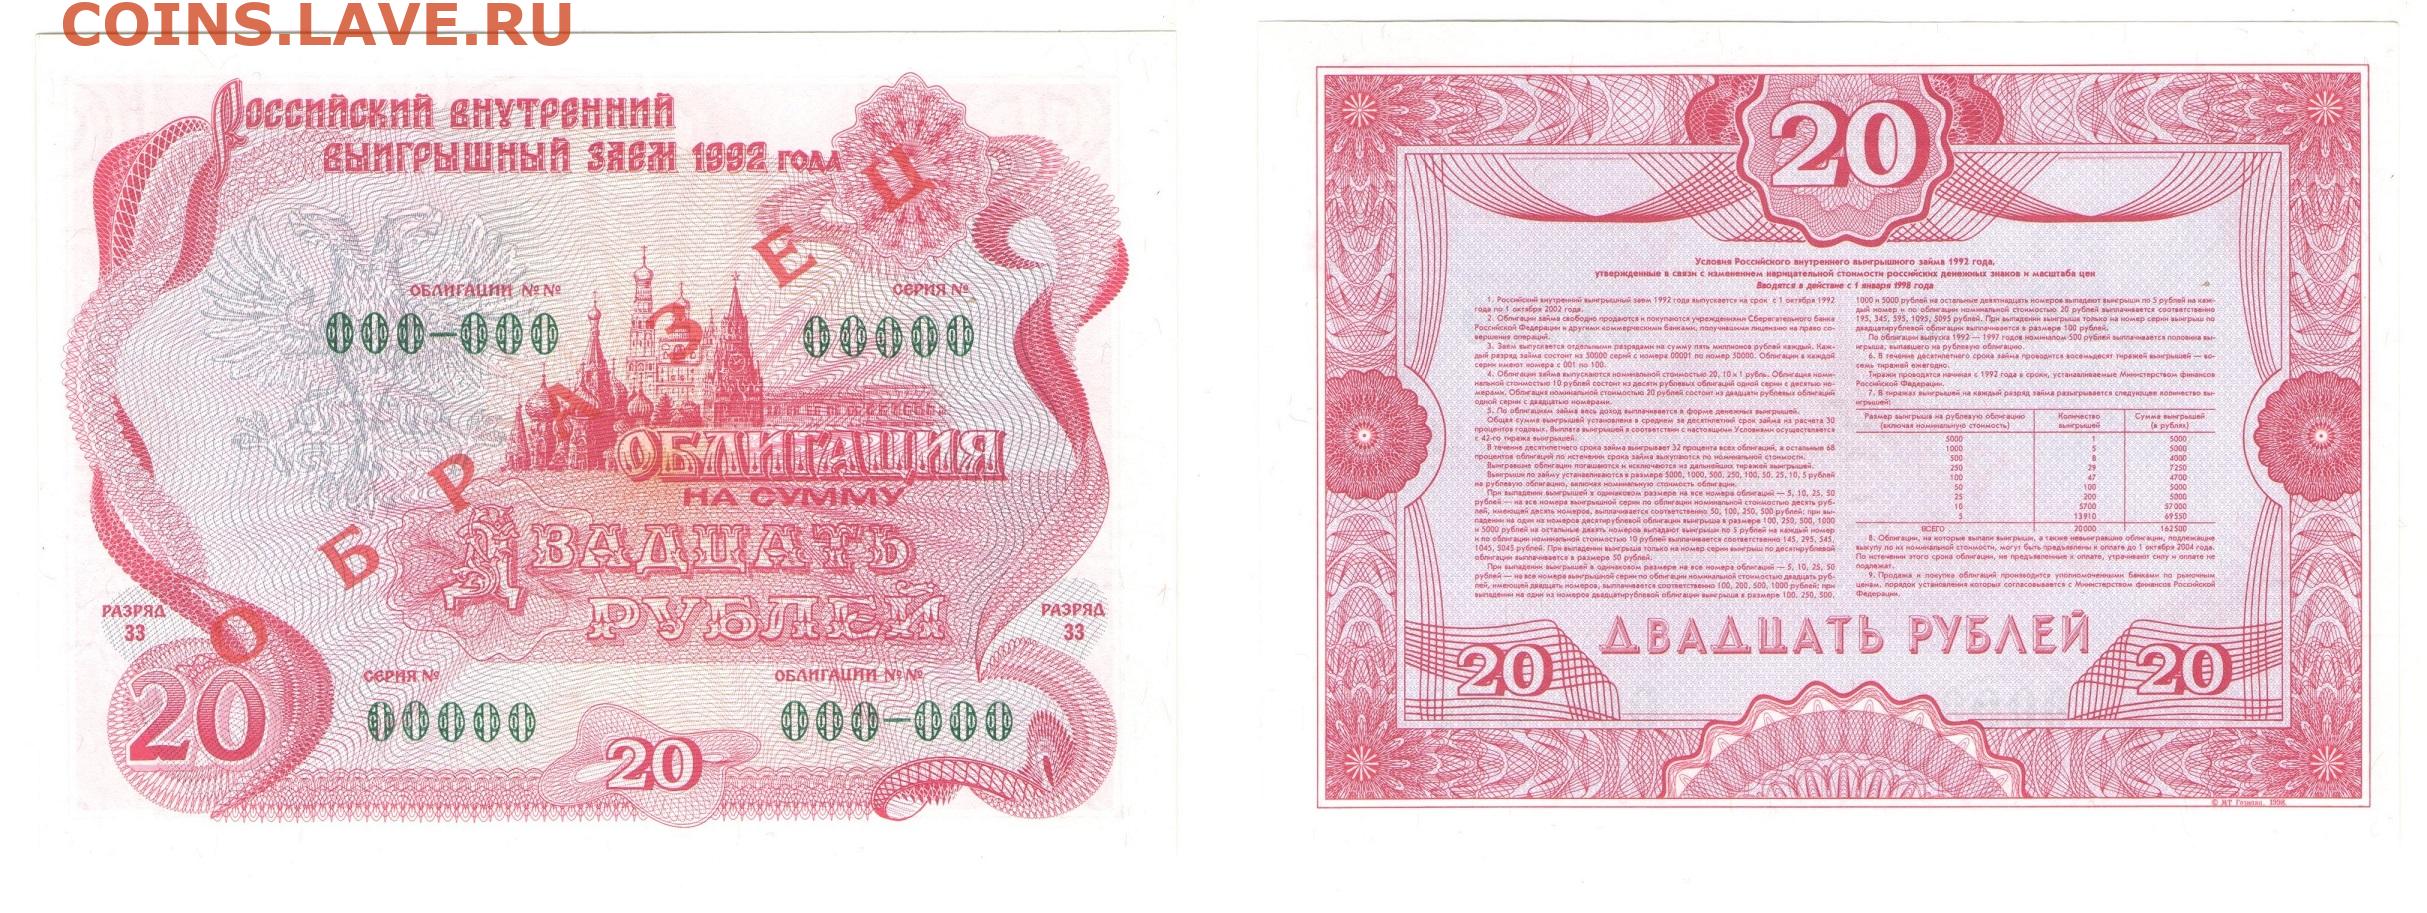 Ценная бумага 1992. Облигации 1992 1000 рублей. Облигации 1992. Облигации внутреннего выигрышного займа 1992 года. Ценные бумаги 1992.